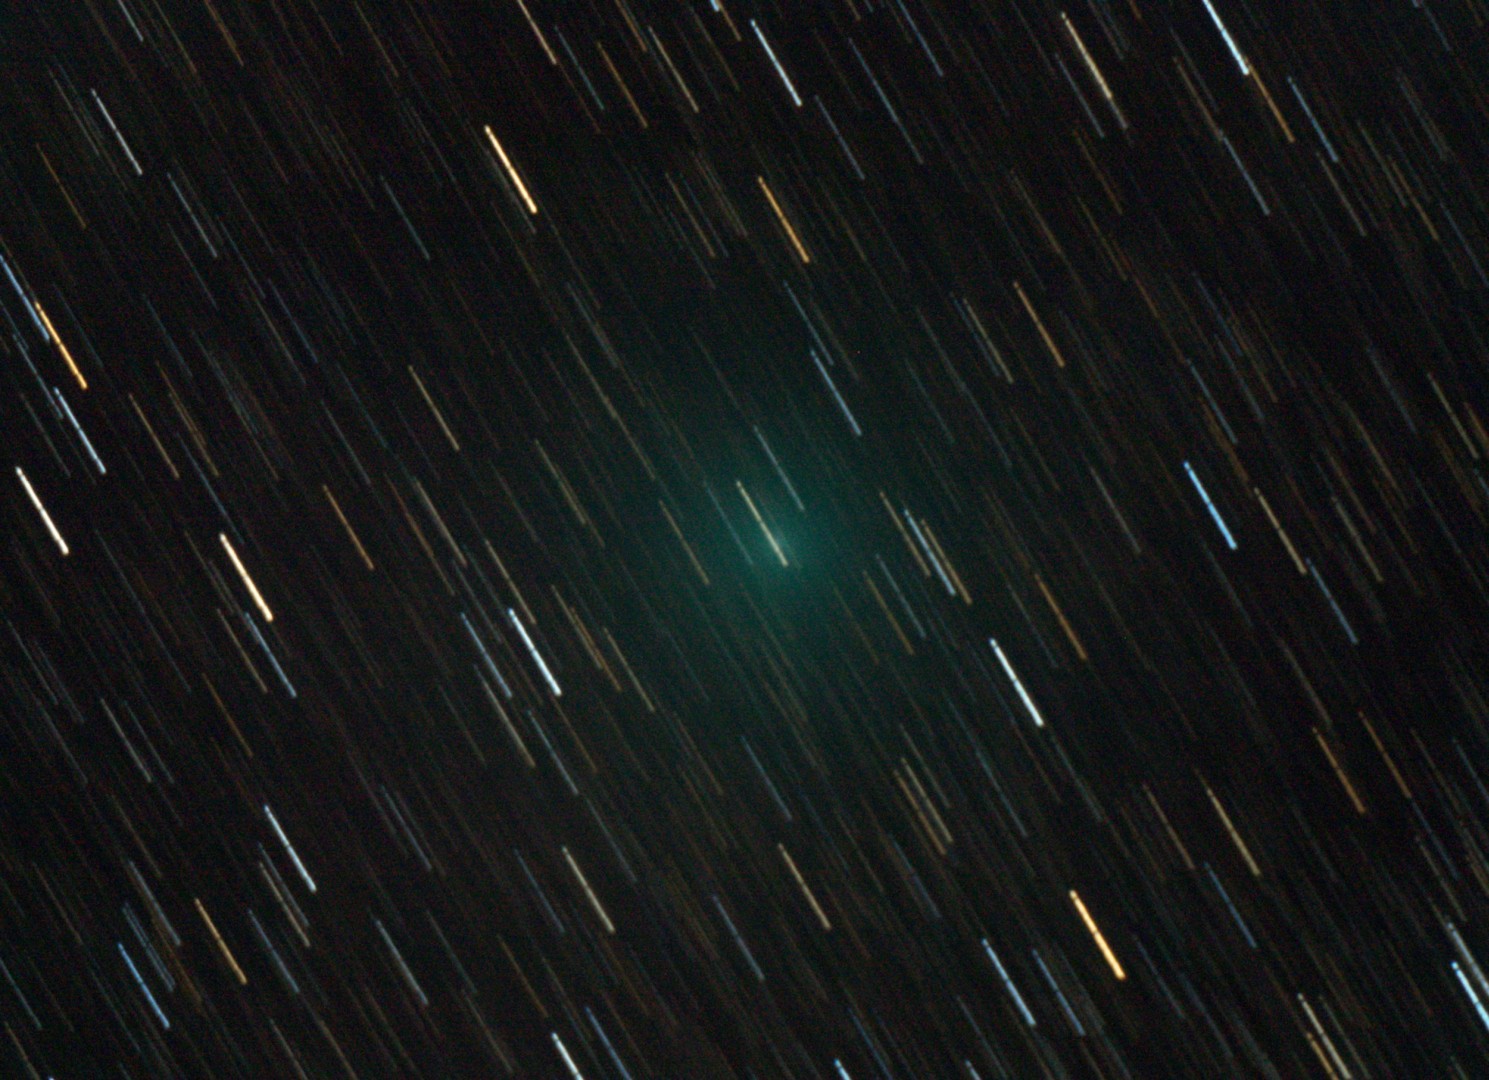 Komet 45P